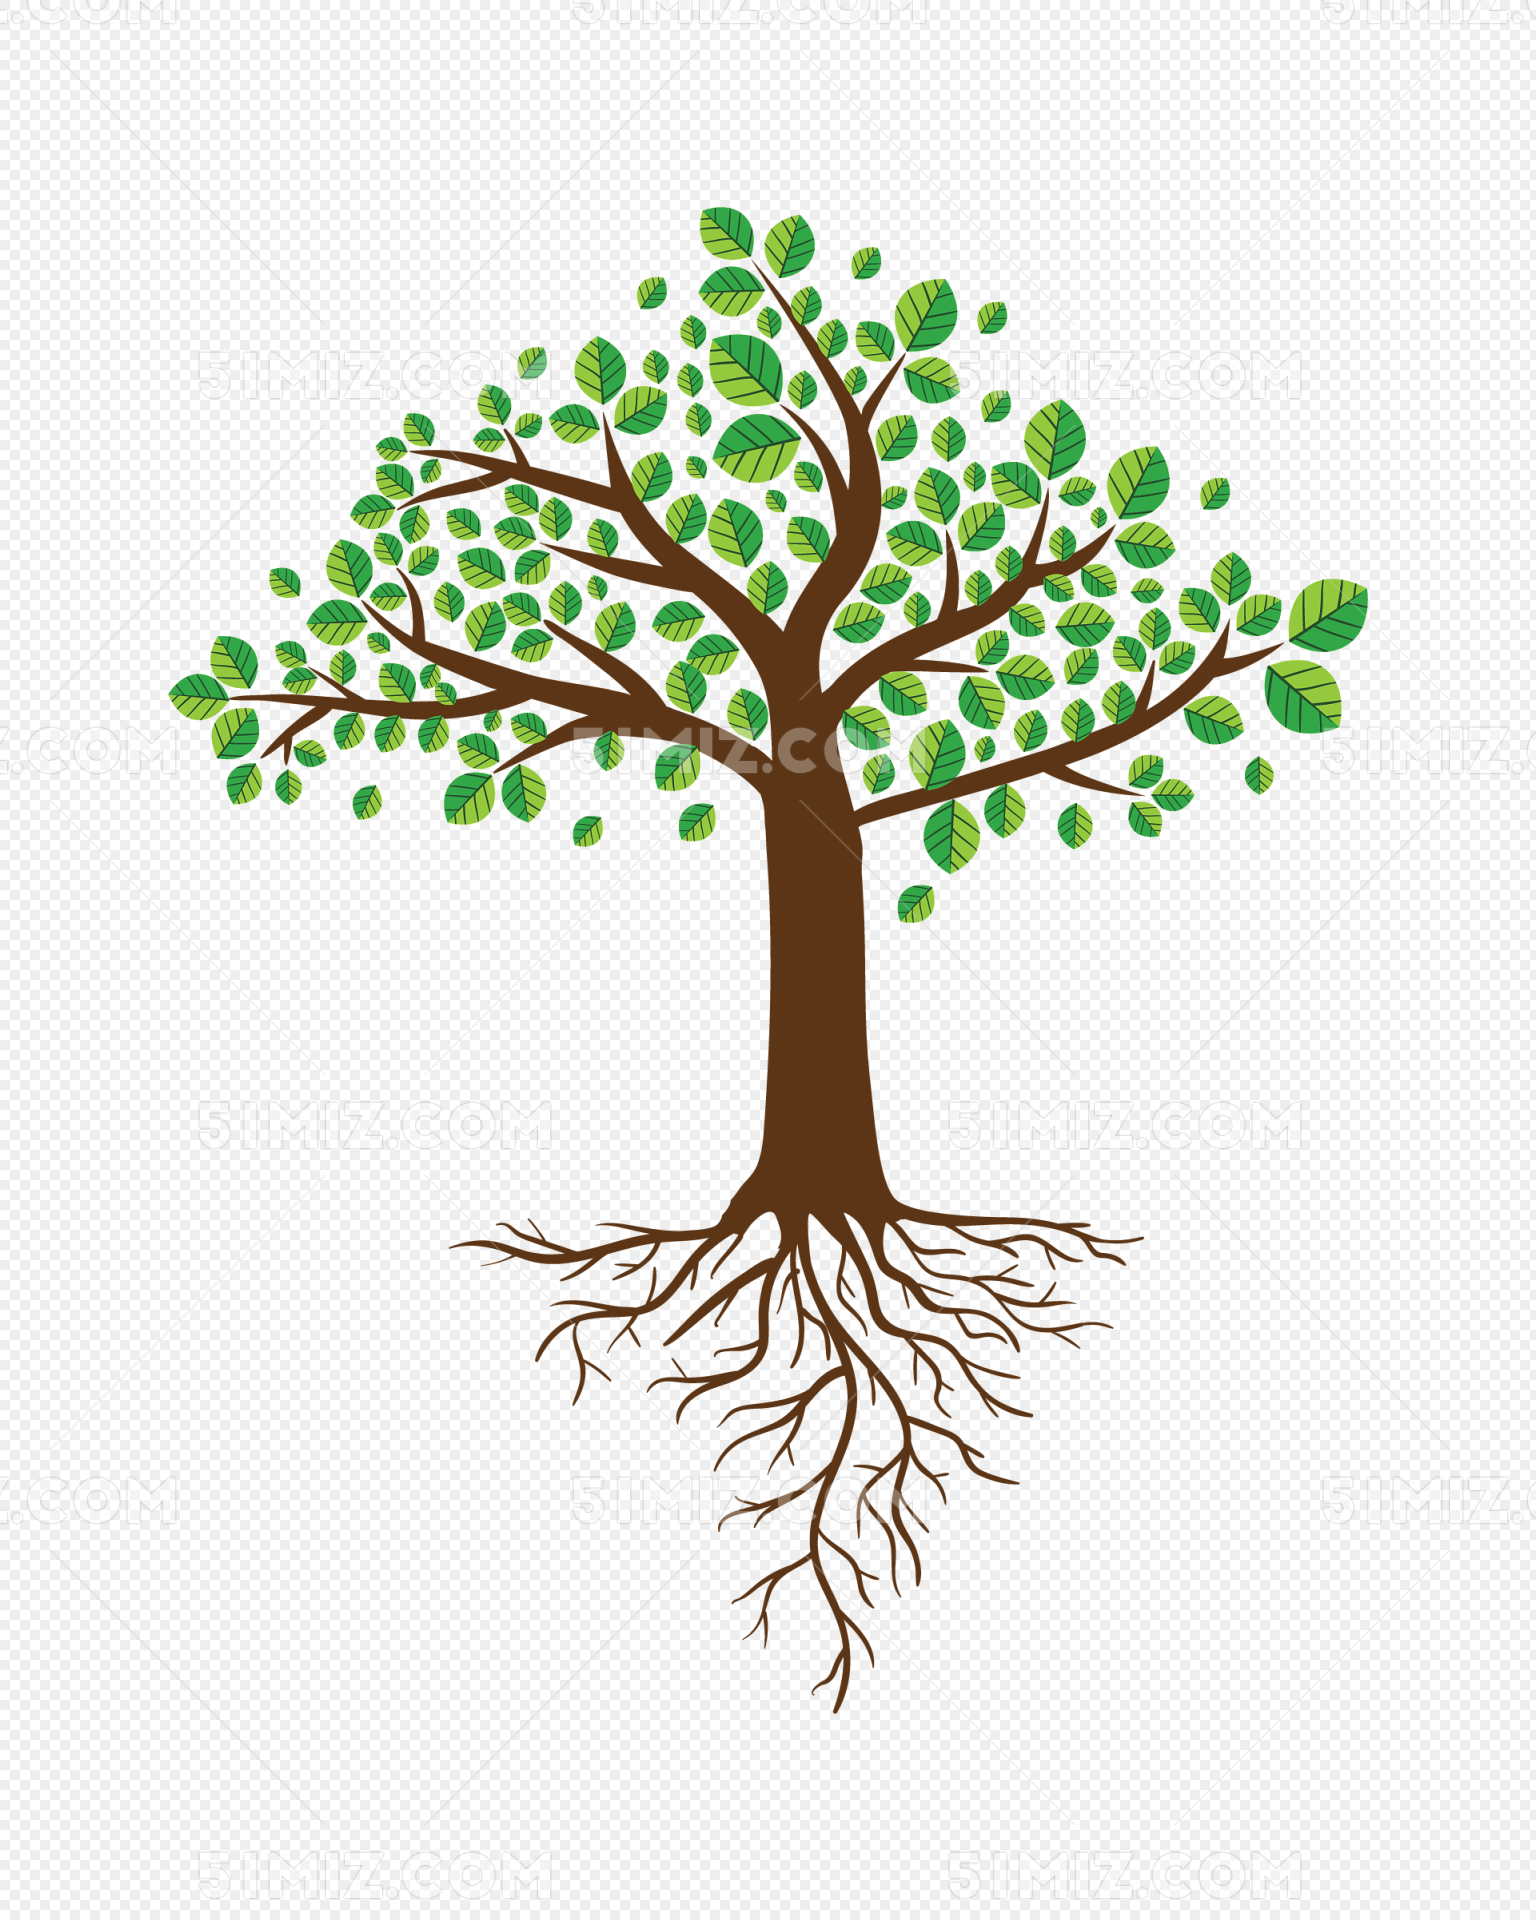 艺术矢量图形插图的风格化树枝树插画图片素材_ID:140120721-Veer图库